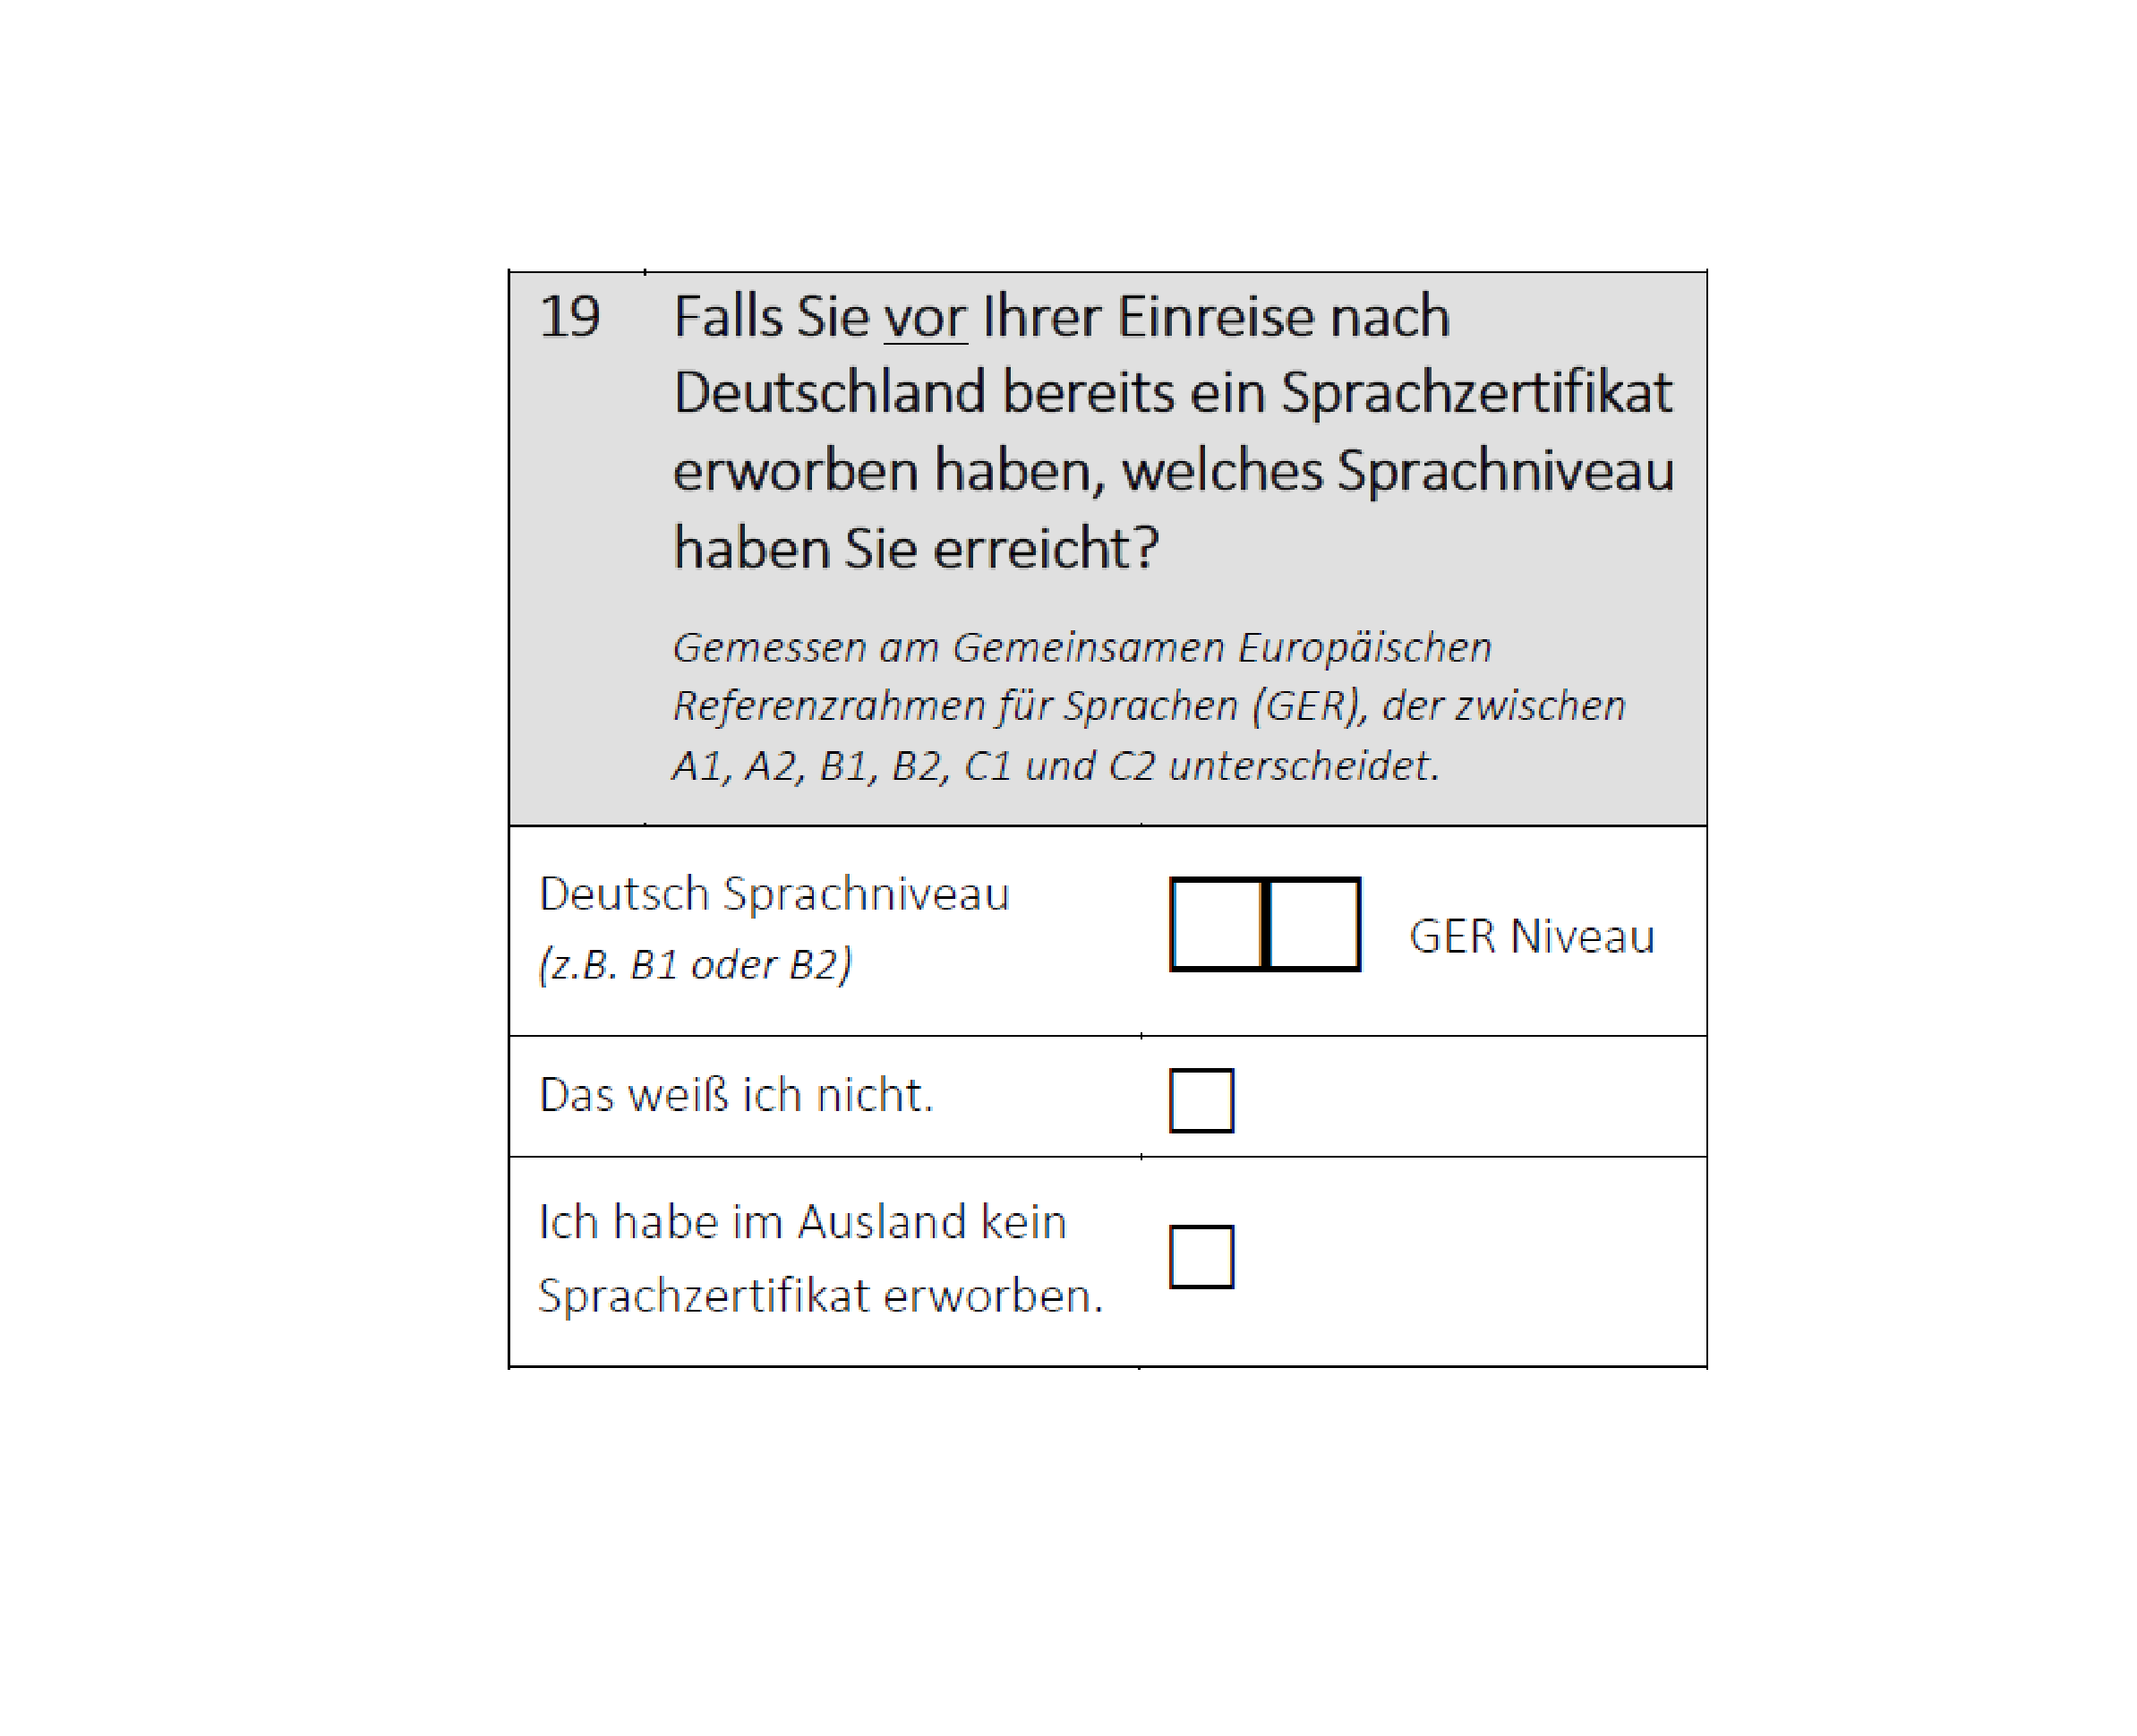 Falls Sie vor Ihrer Einreise nach Deutschland bereits ein Sprachzertifikat erworben haben, welches Sprachniveau haben Sie erreicht?